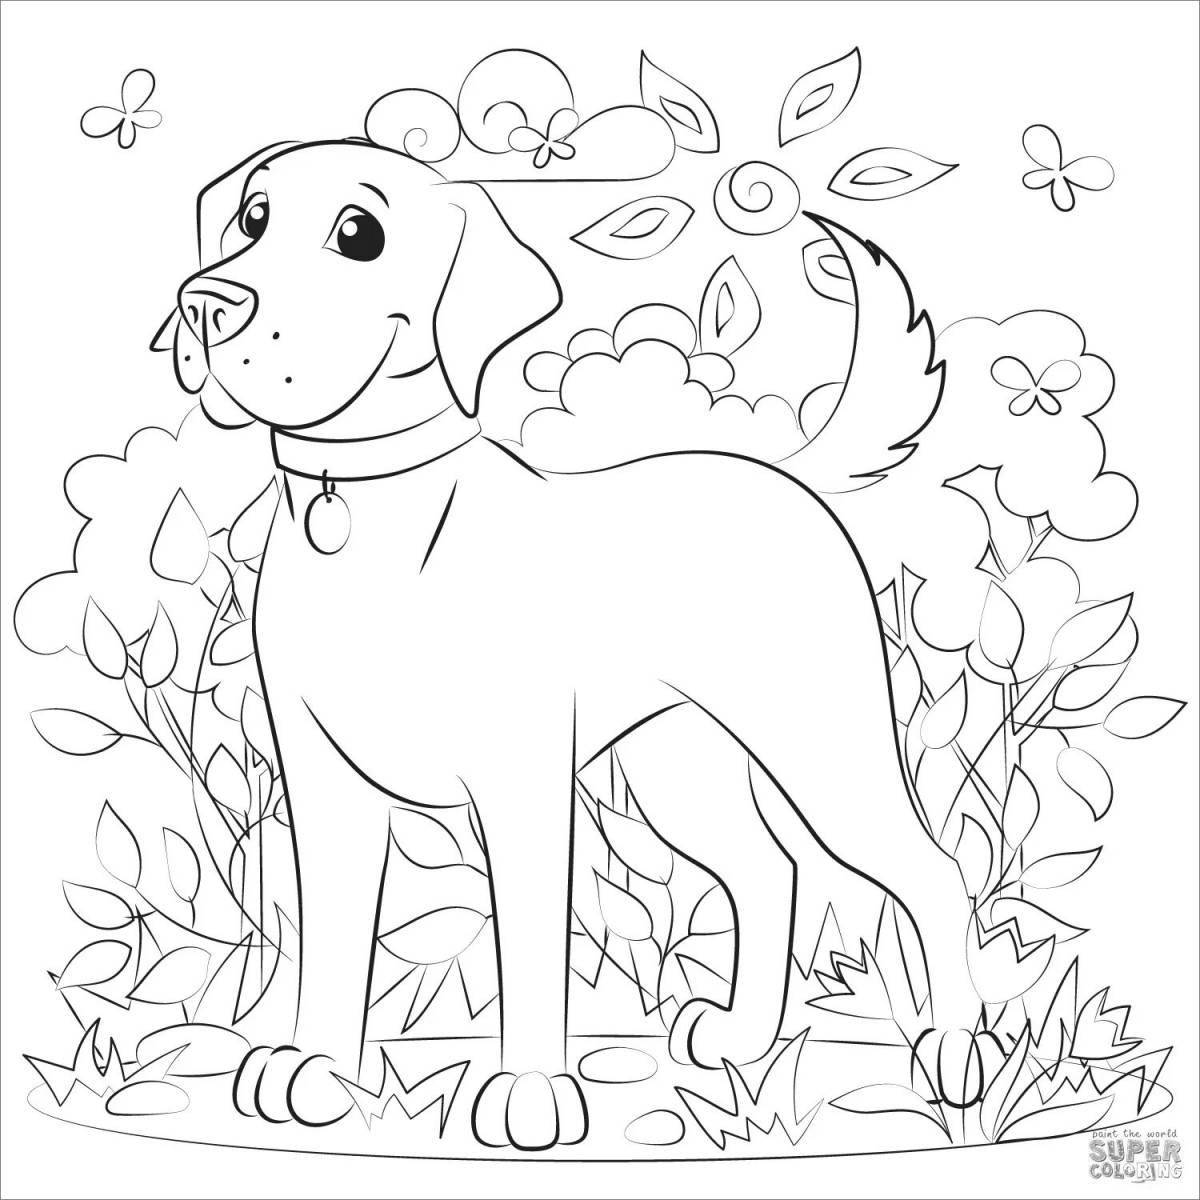 Coloring page adorable labrador puppy